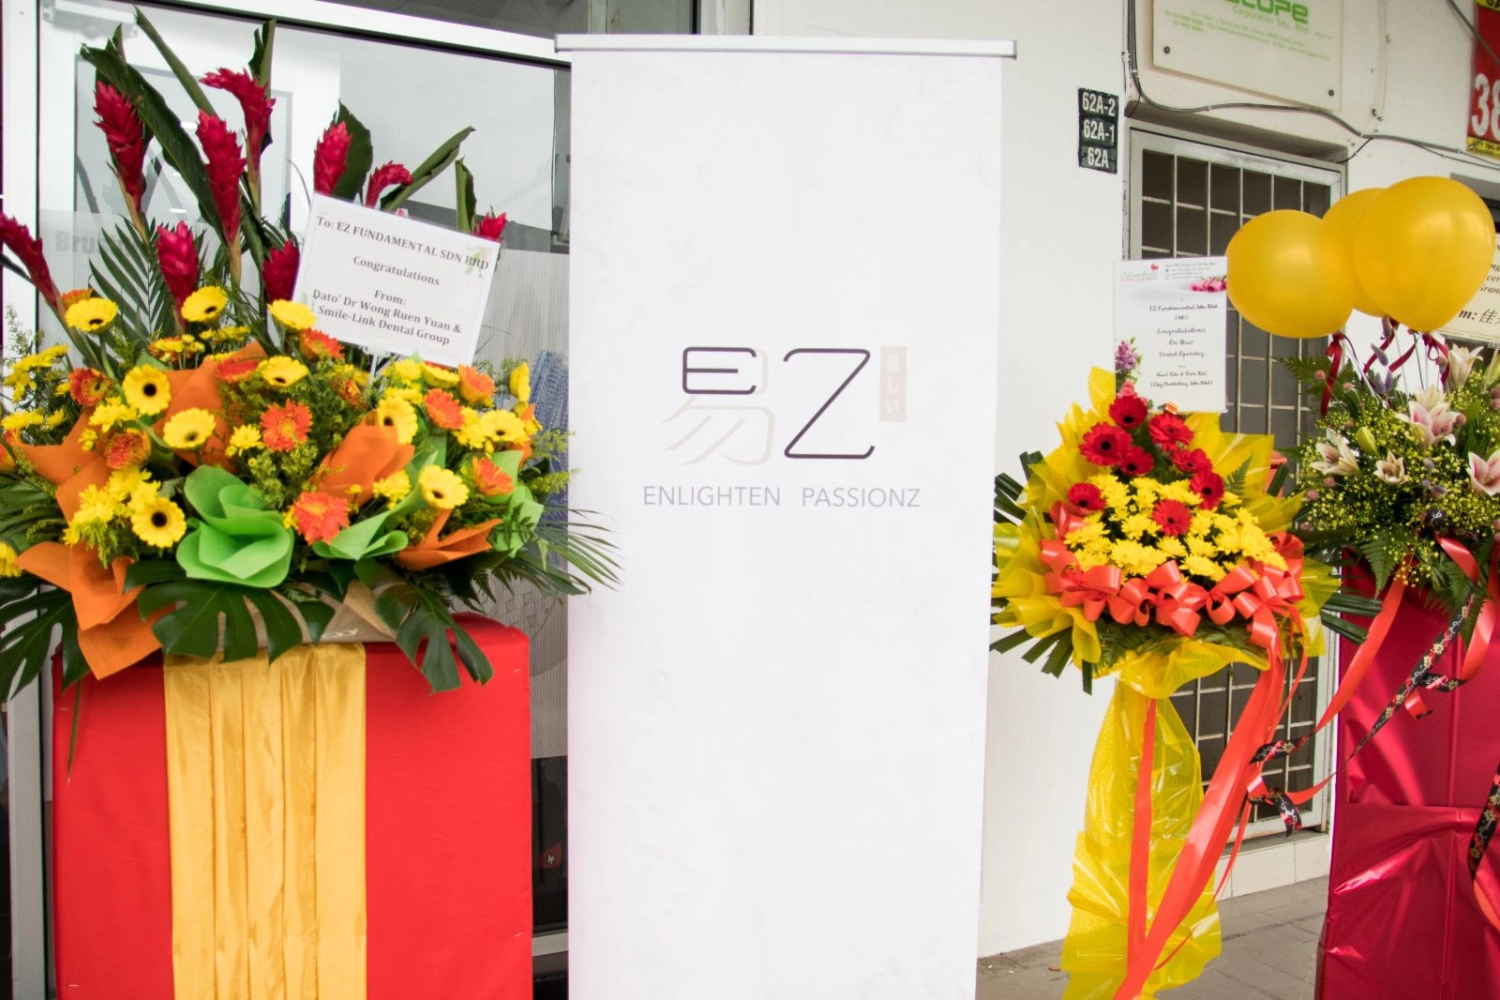 Grand Opening- EZ White 1st Anniversary